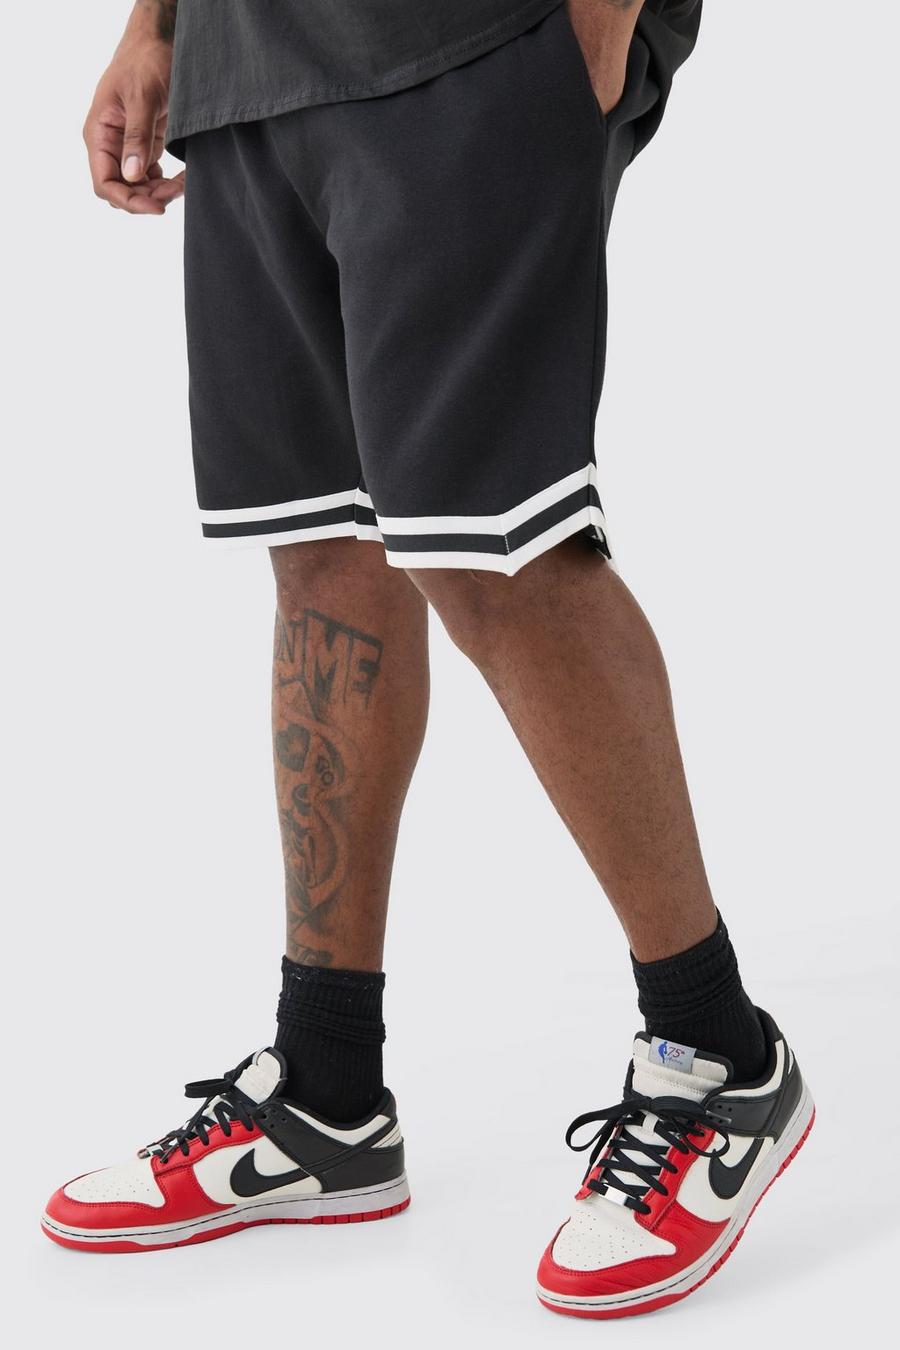 Pantalón corto Plus holgado de largo medio estilo baloncesto en negro, Black